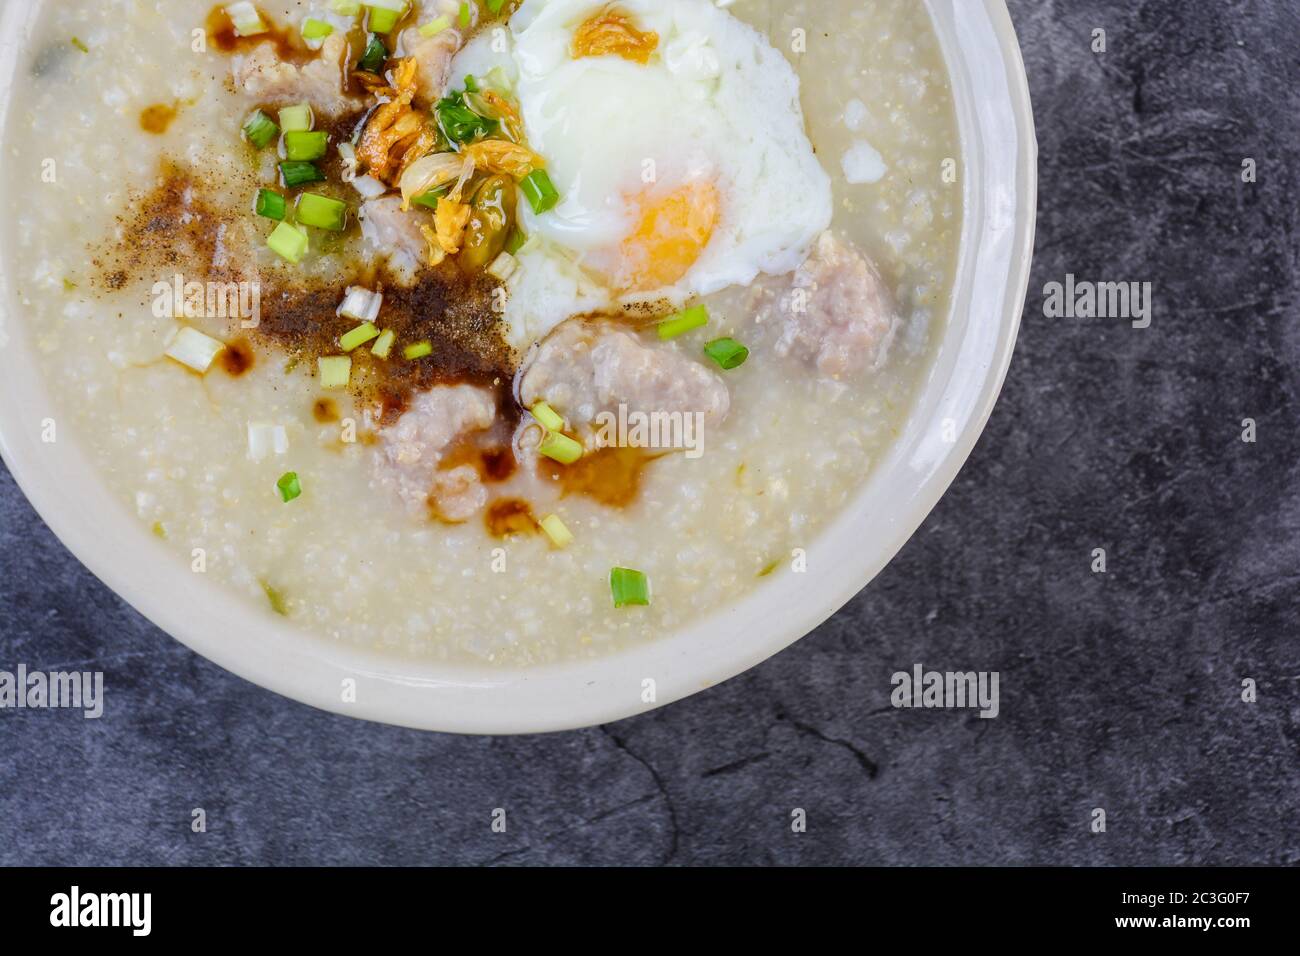 Congee, porridge de riz avec du porc haché, œuf dur, très bien pour le petit déjeuner. Banque D'Images